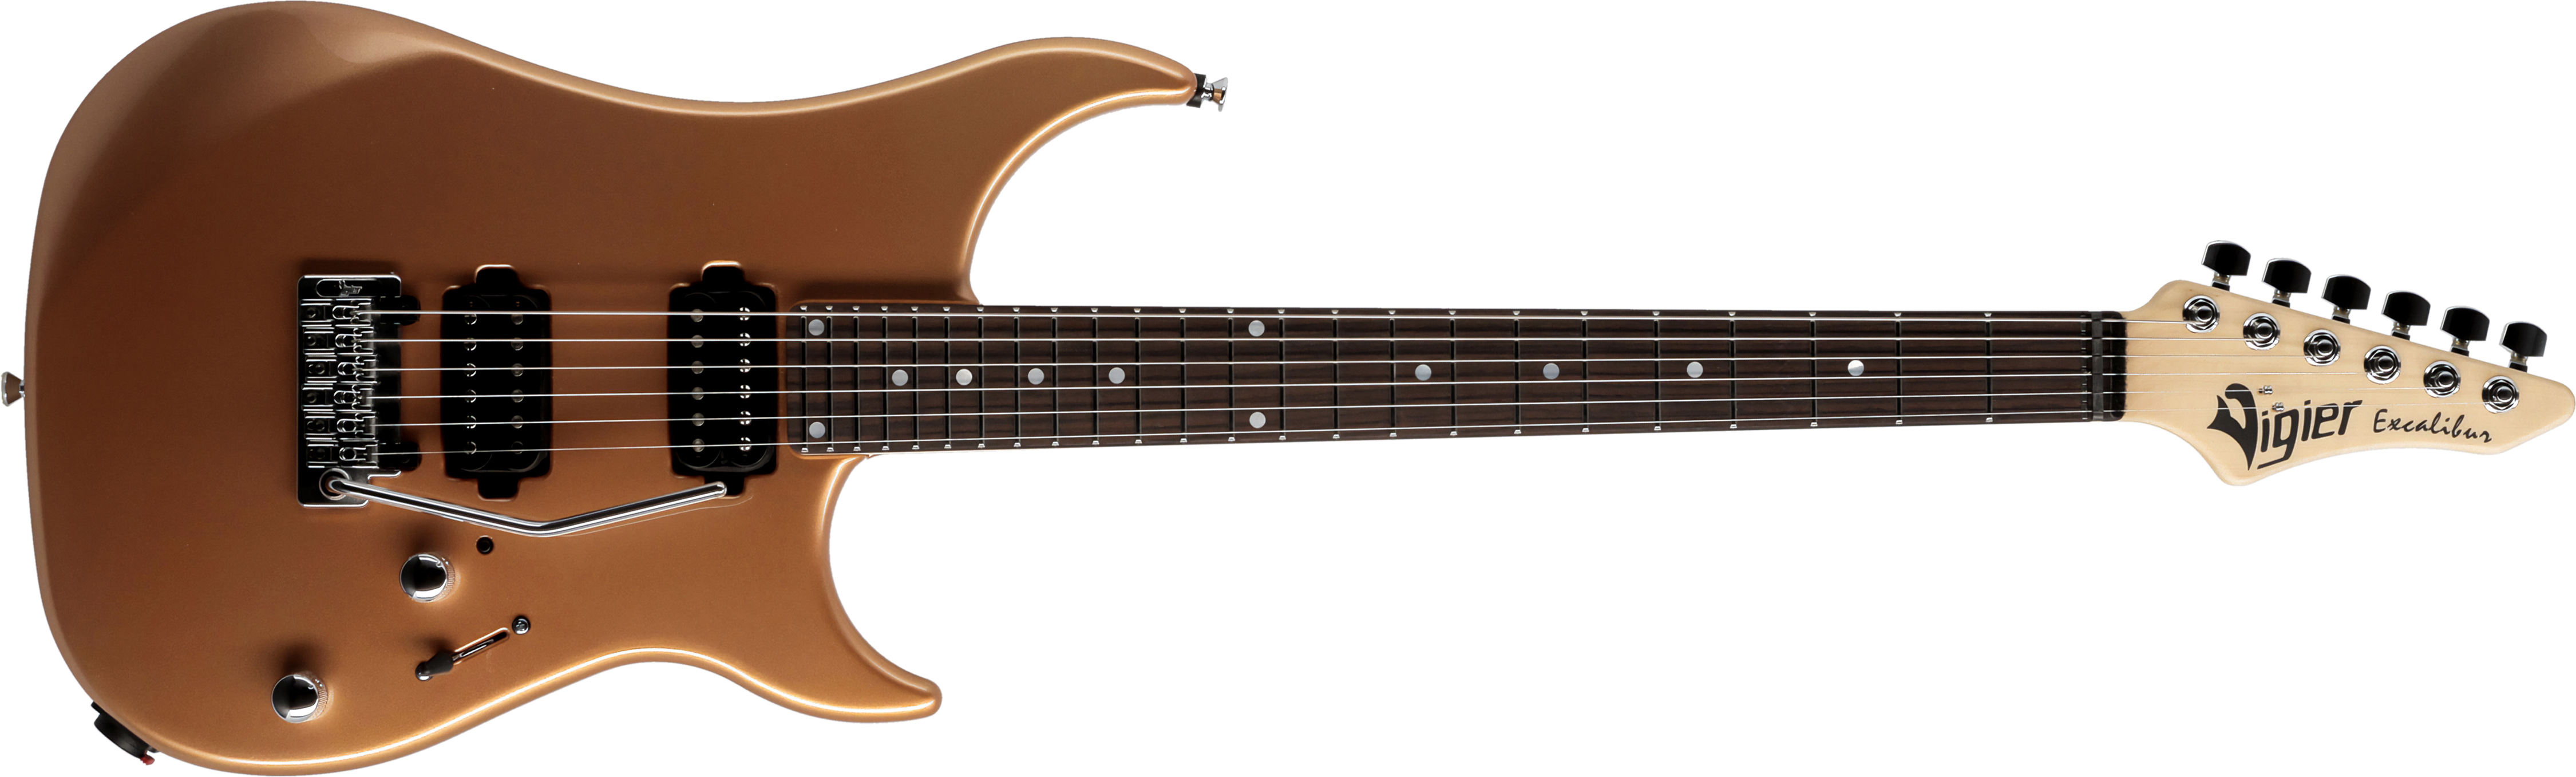 Vigier Excalibur Thirteen 2h Trem Rw - Monarchy Gold - Elektrische gitaar in Str-vorm - Main picture